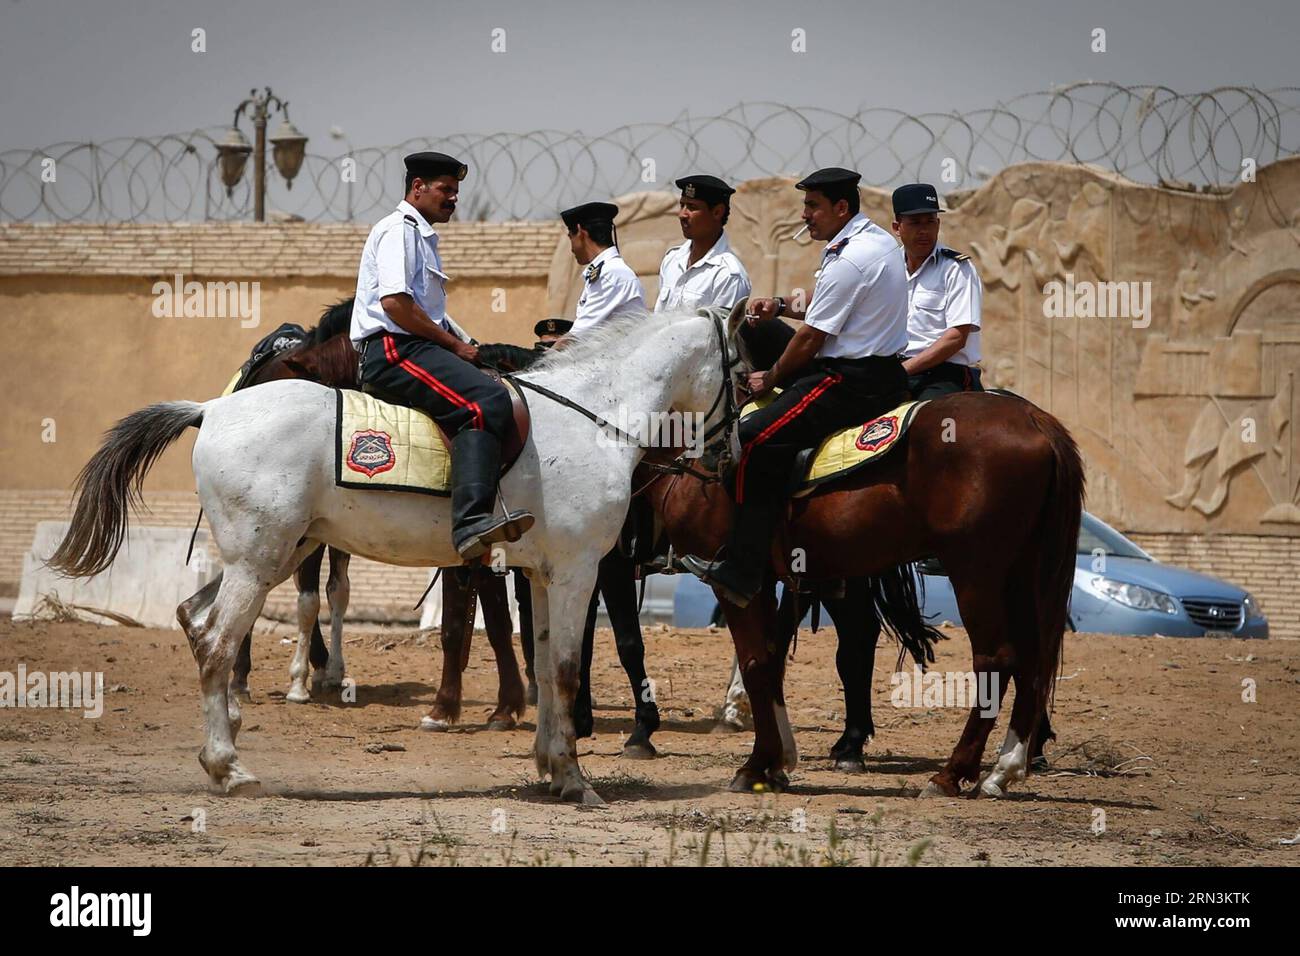 (150421) -- LE CAIRE, le 21 avril 2015 -- la police égyptienne garde l'académie de police où se déroule le procès Morsi au Caire, en Égypte, le 21 avril 2015. Un tribunal égyptien a condamné mardi l'ancien président islamiste Mohammed Morsi à 20 ans de prison pour le meurtre de manifestants en 2012. EGYPT-MORSI-VERDICT CuixXinyu PUBLICATIONxNOTxINxCHN le Caire avril 21 2015 Garde de police égyptienne l'Académie de police où se déroule le procès Morsi au Caire Egypte avril 21 2015 au tribunal égyptien a condamné mardi l'ancien président islamiste Mohammed Morsi à 20 ans de prison pour le meurtre de manifestants Banque D'Images